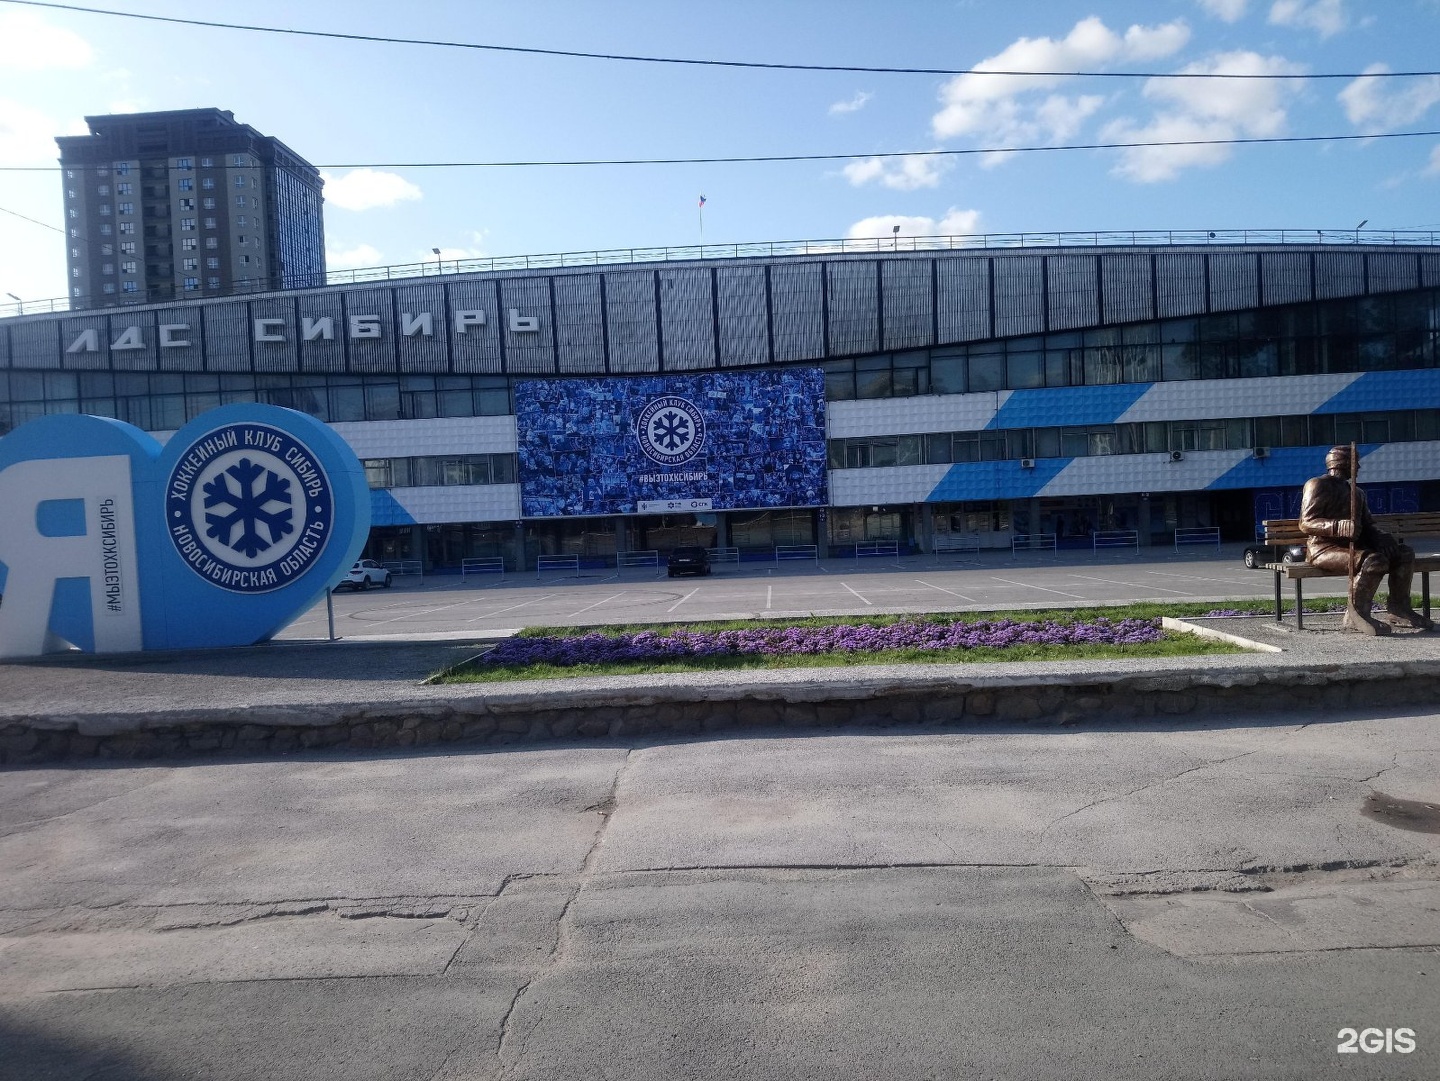 ледовый дворец спорта сибирь новосибирск